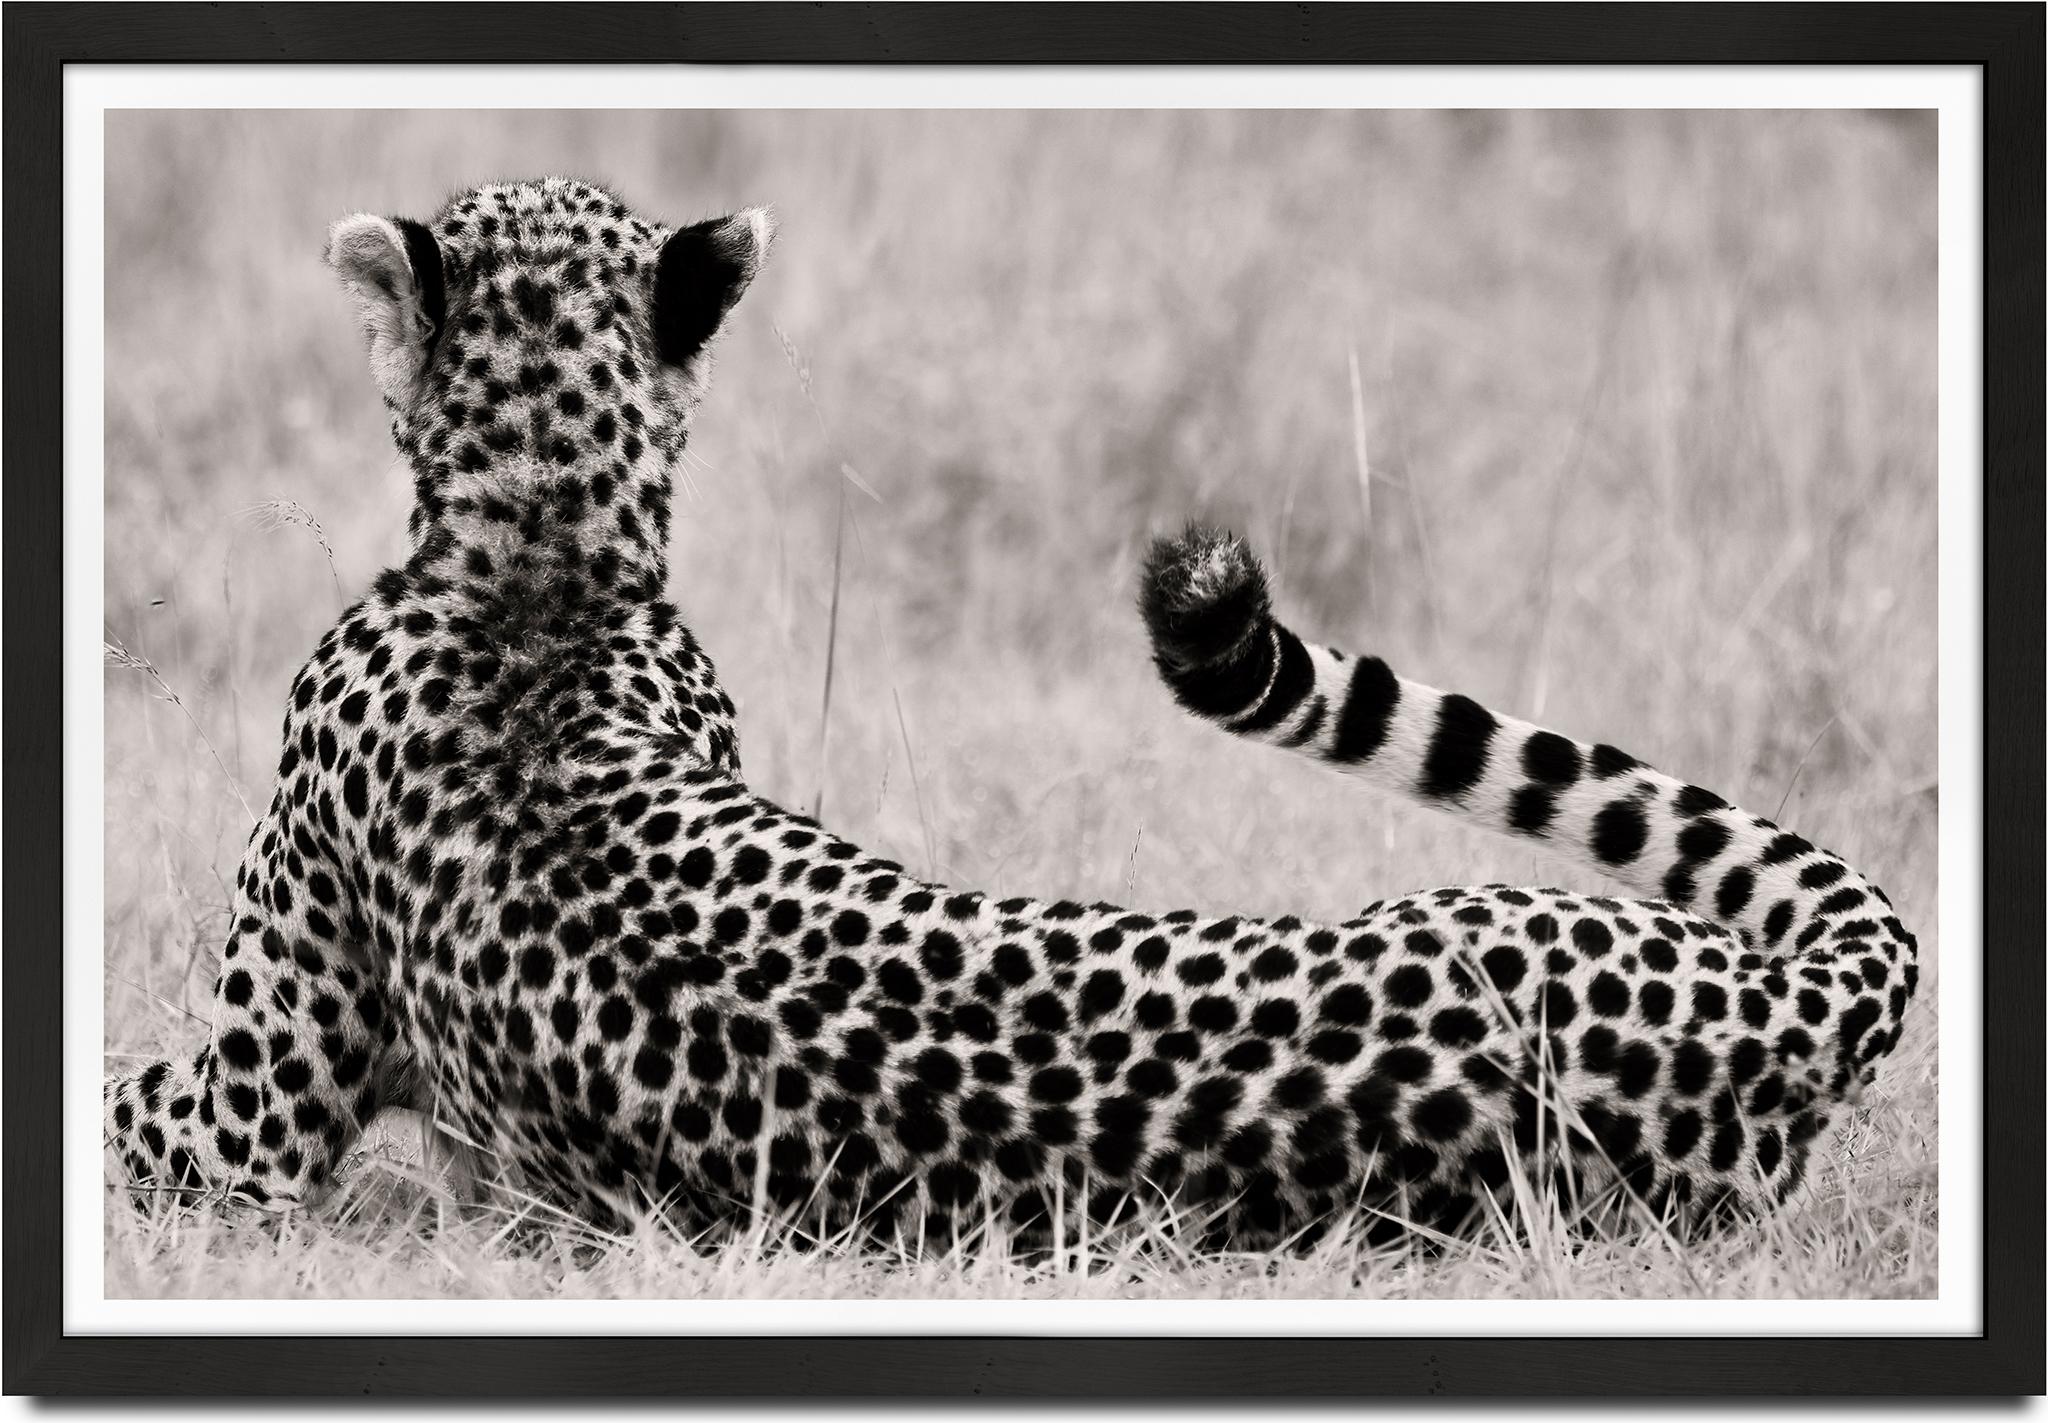 Joachim Schmeisser Portrait Photograph – The Divine, Cheetah, Schwarz- und Hwite-Fotografie, Afrika, Porträt, Tierwelt